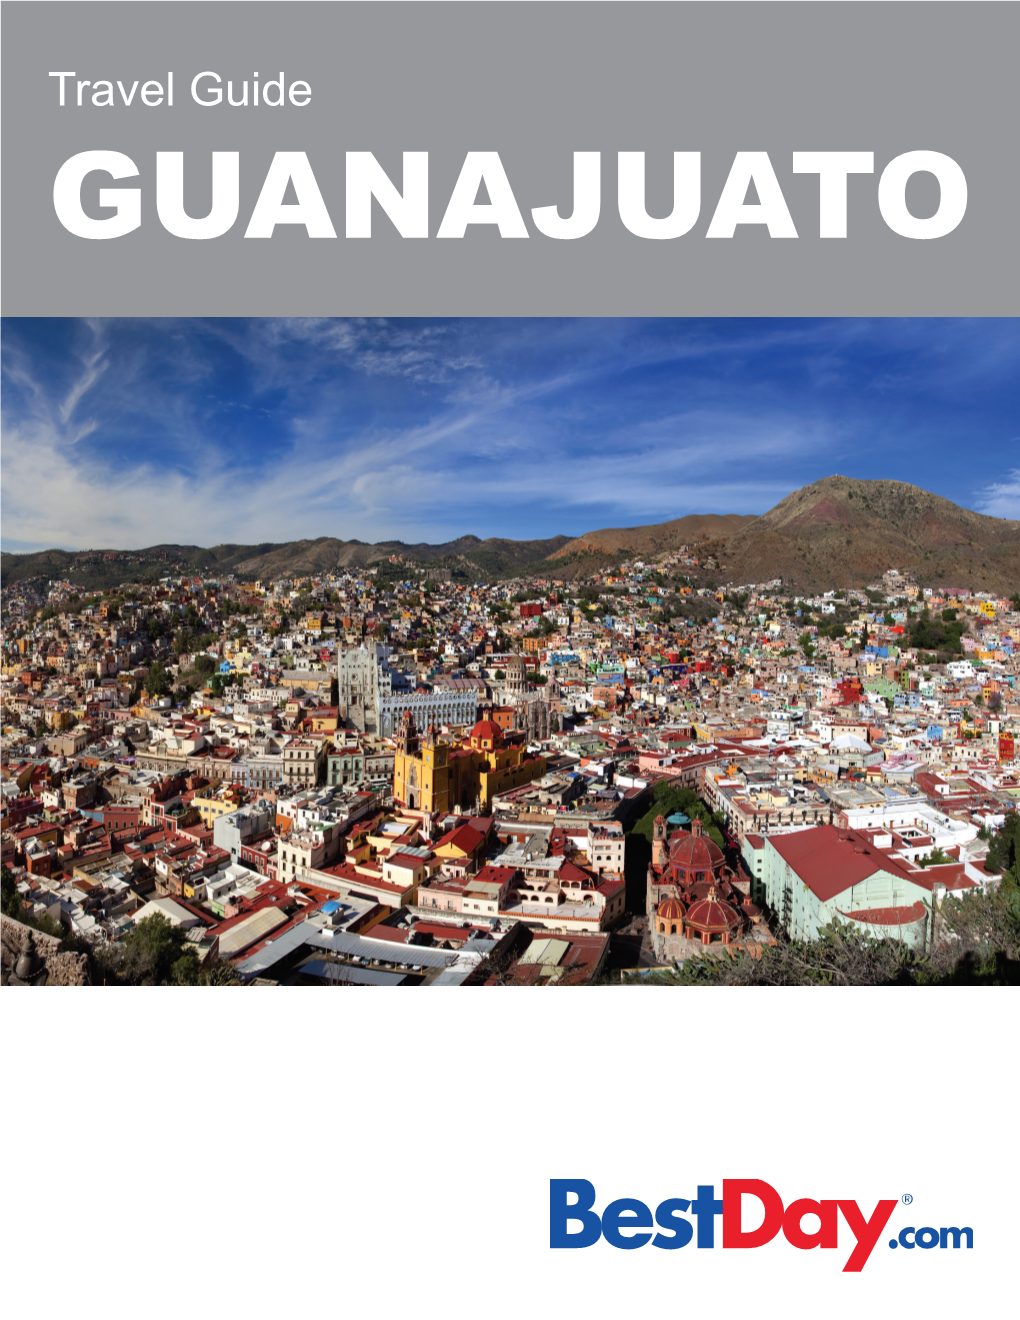 Travel Guide GUANAJUATO Contents